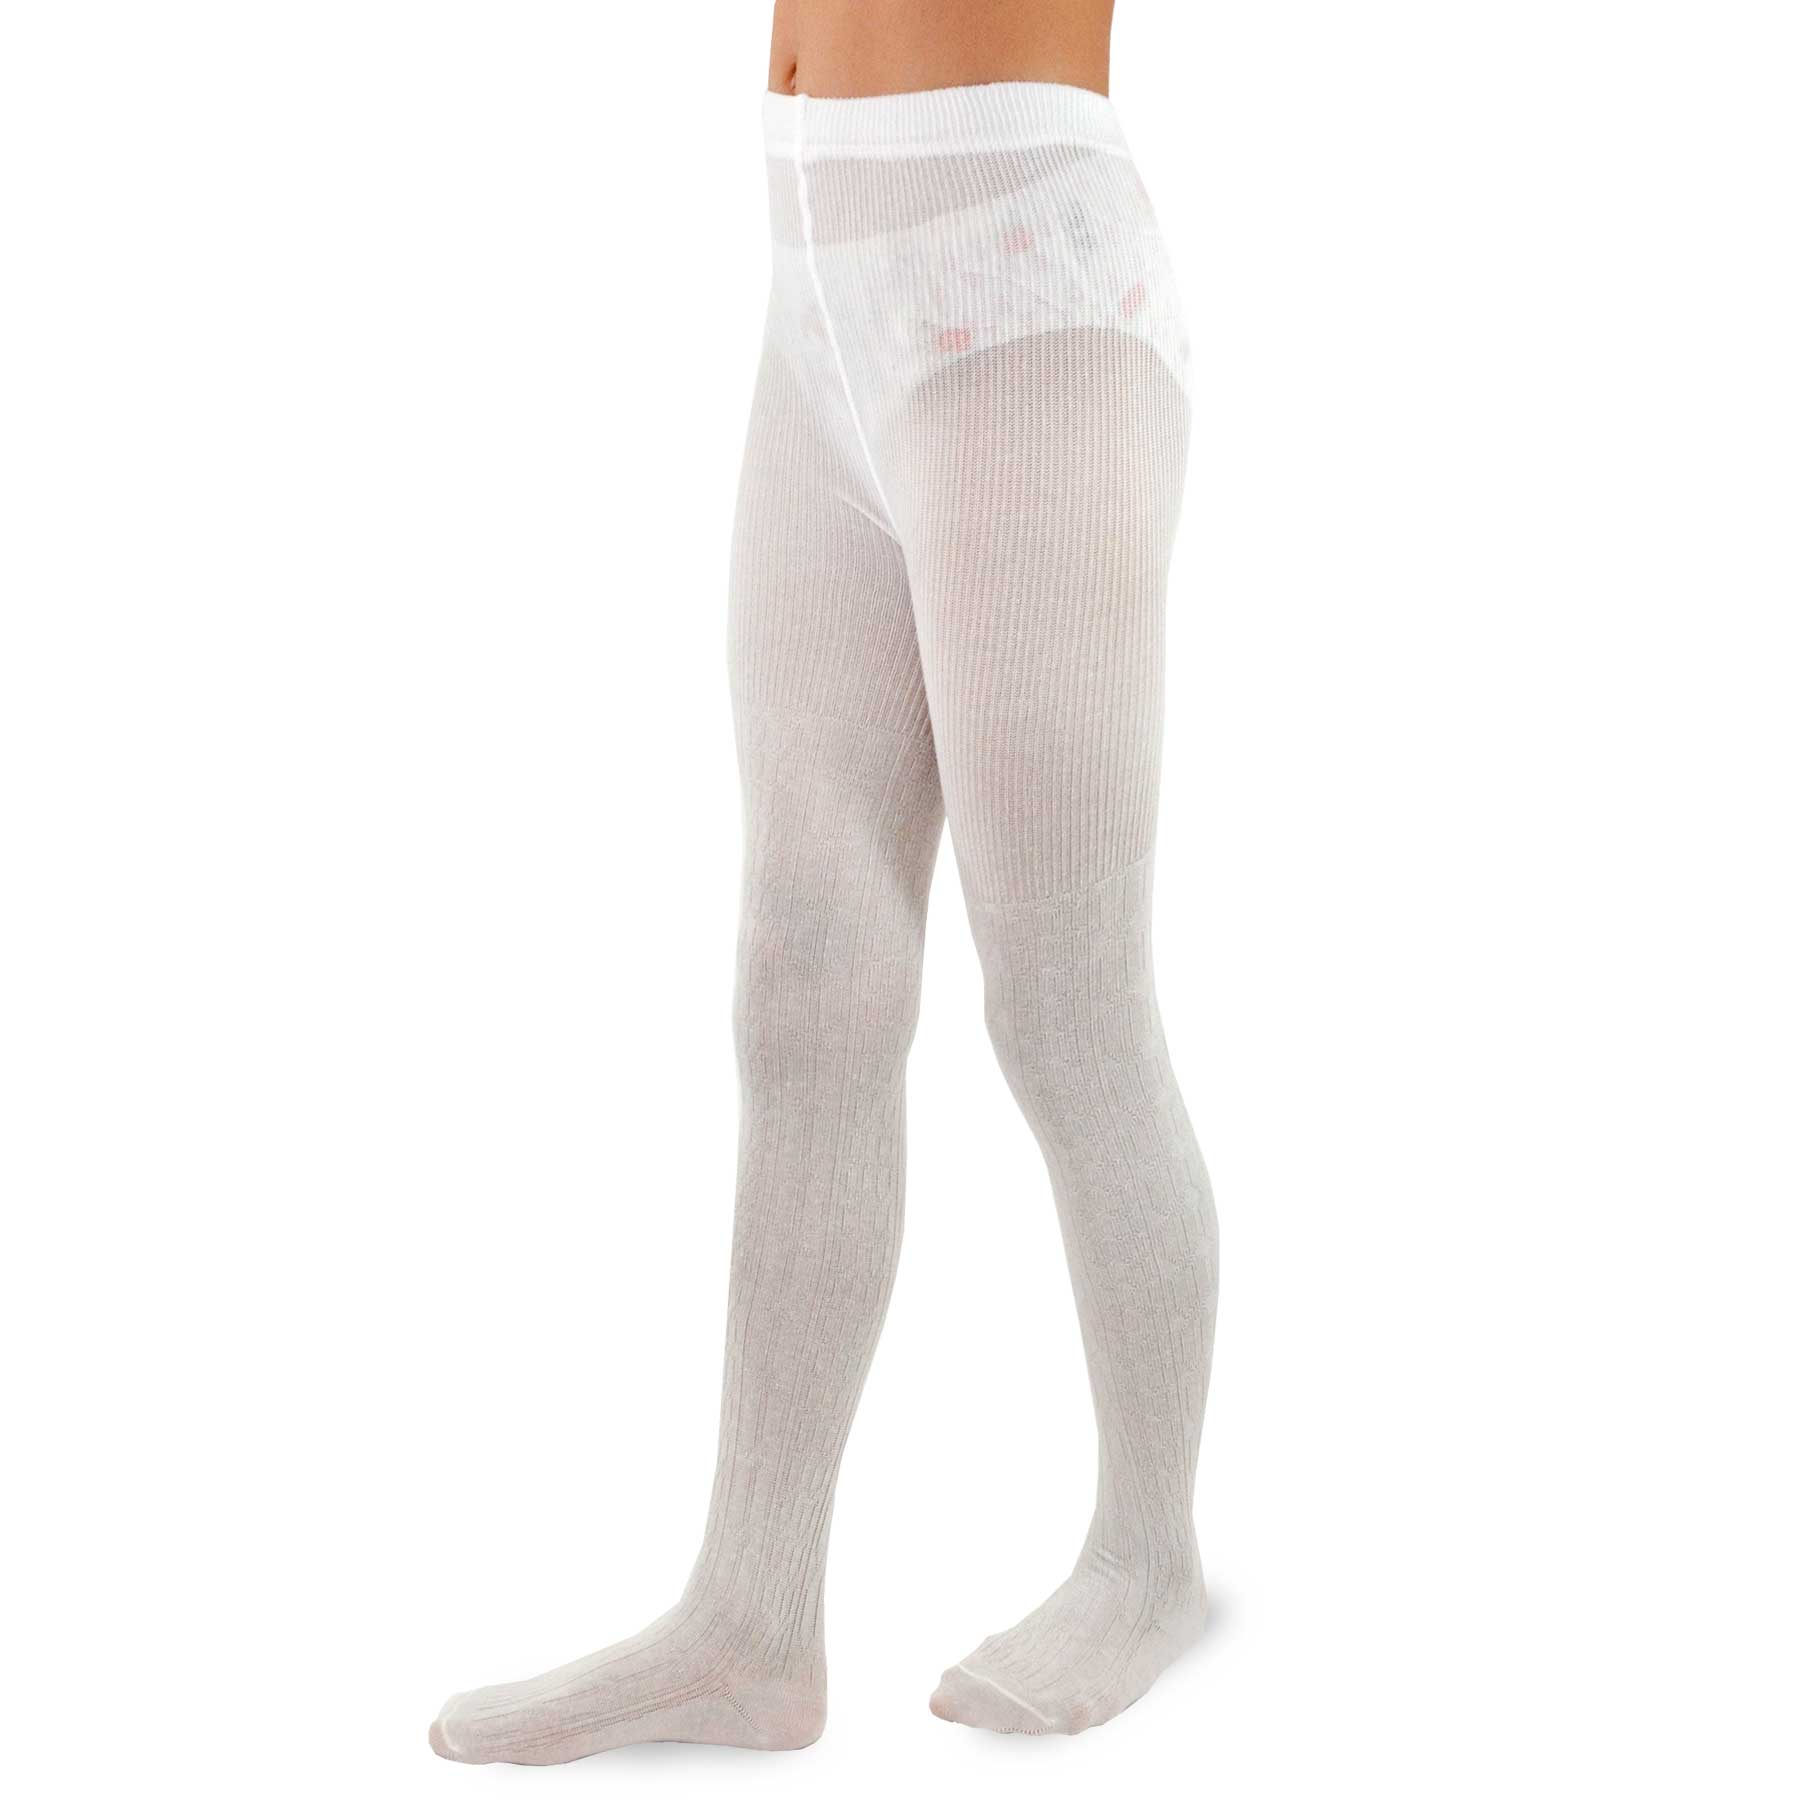 TeeHee Socks Kid's Casual Cotton Tights Simple 3-Pack (K1605)